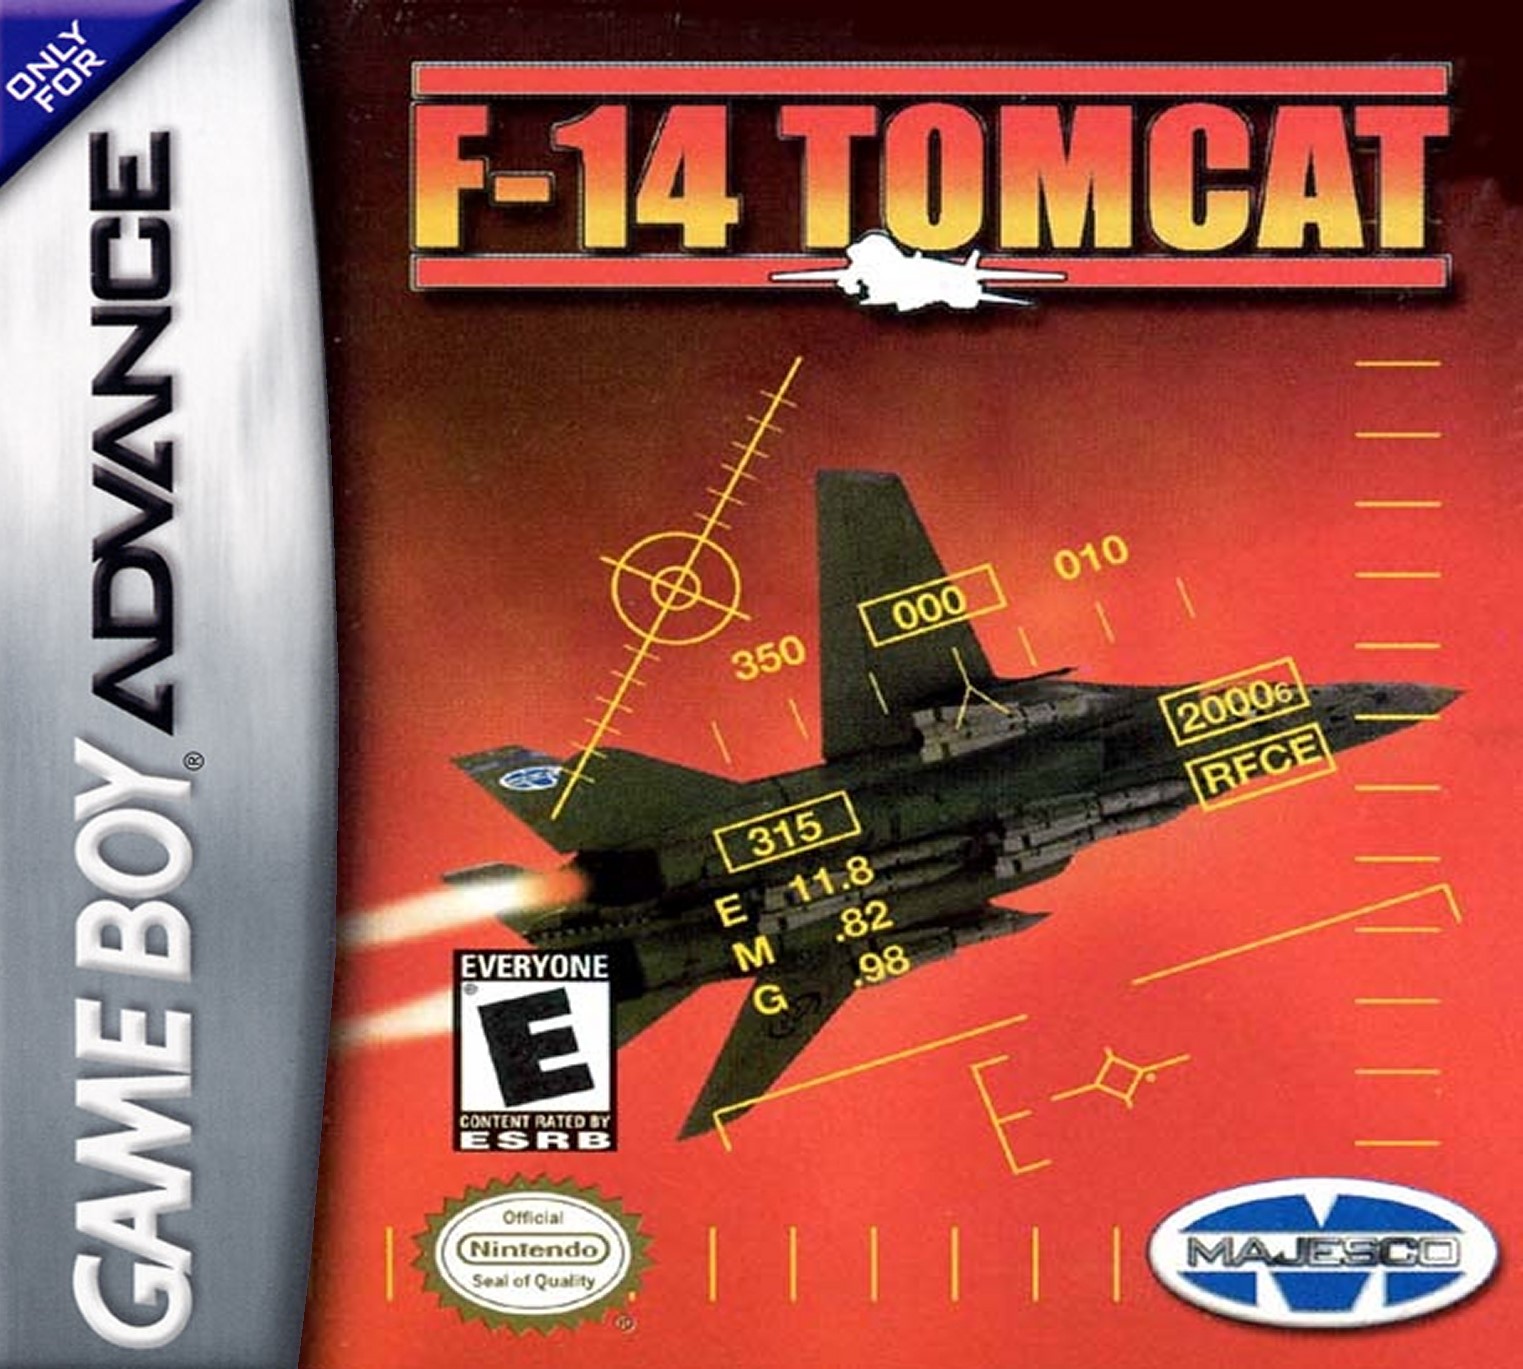 'F14 Tomcat'